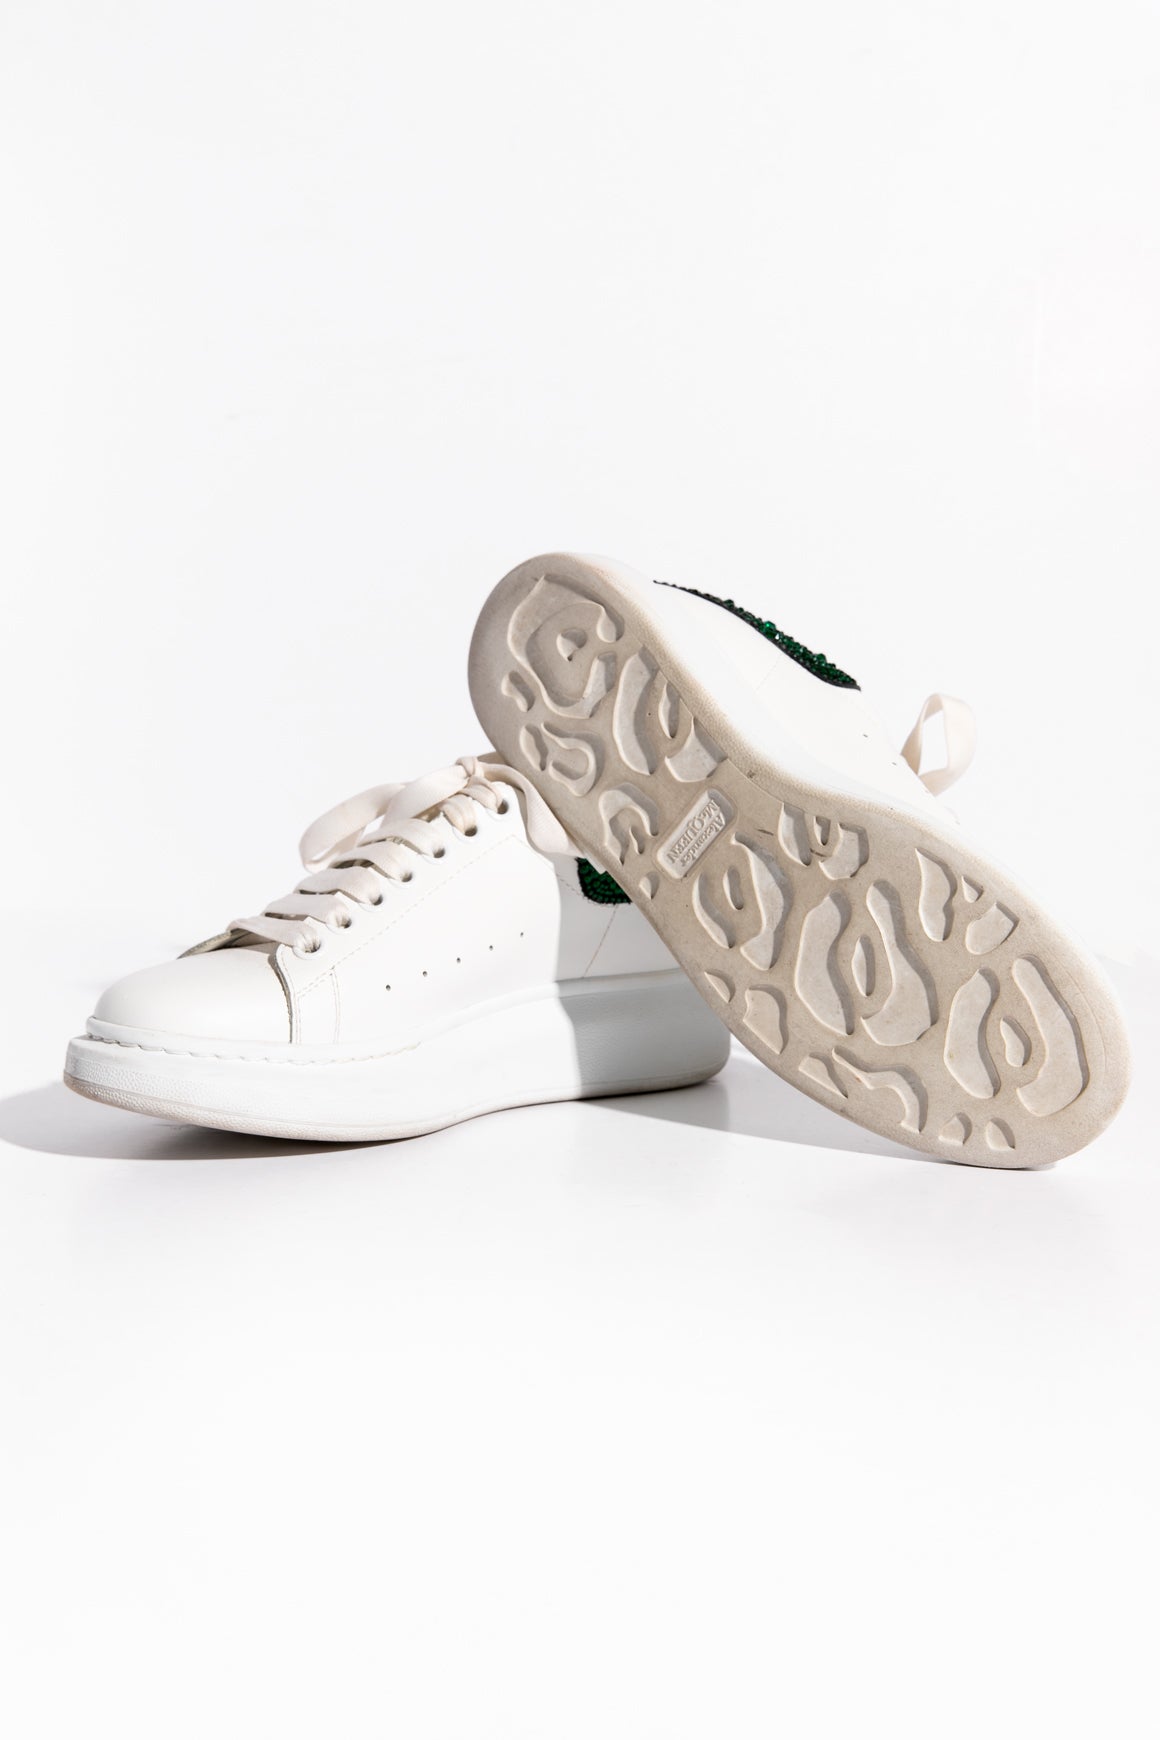 ALEXANDER MCQUEEN White & Green Sneakers (Sz. 38)